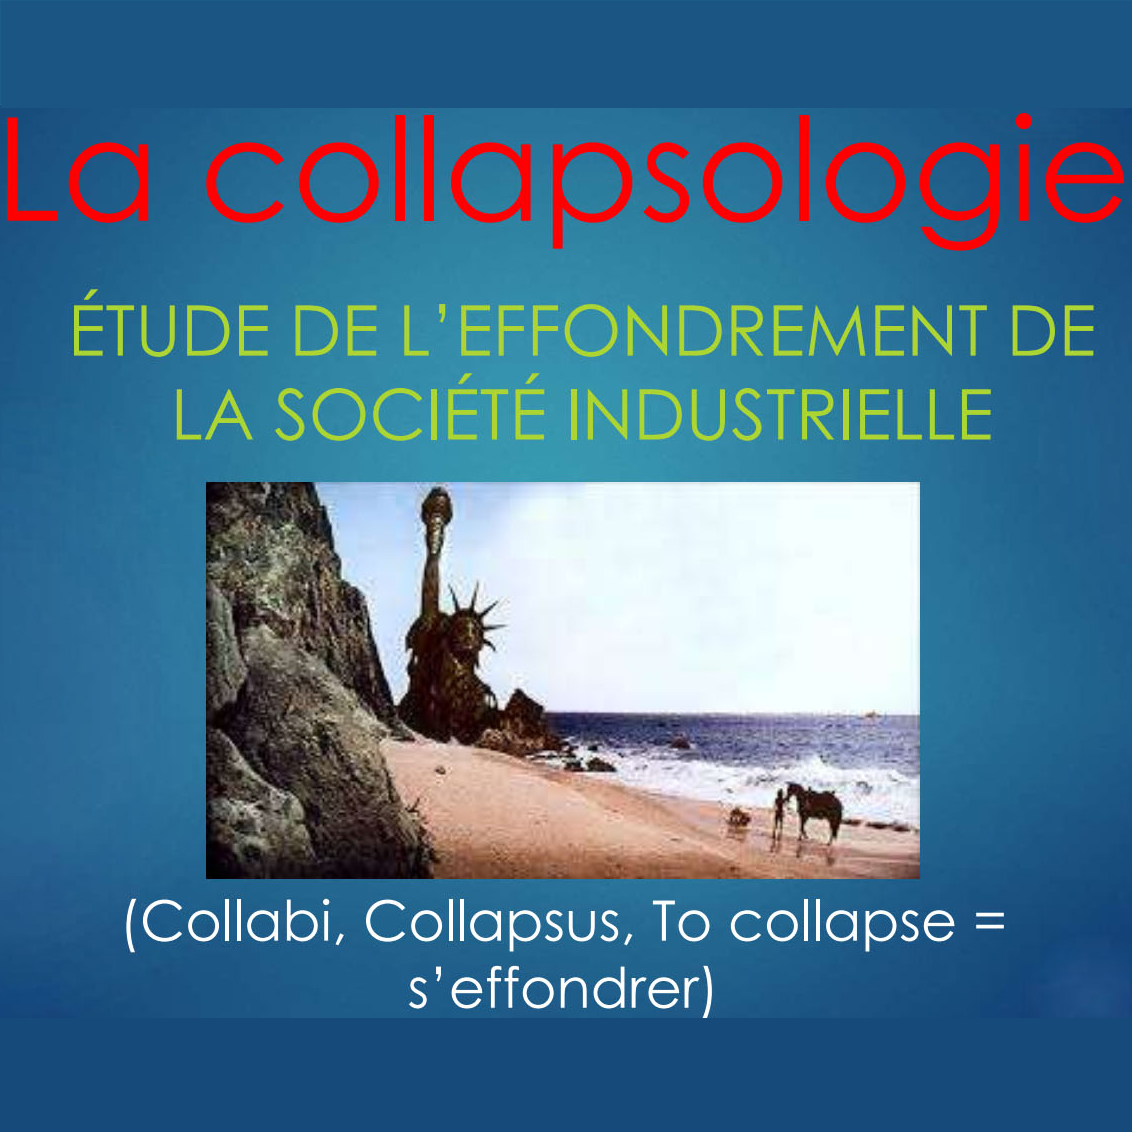 La collapsologie : les risques d’effondrement